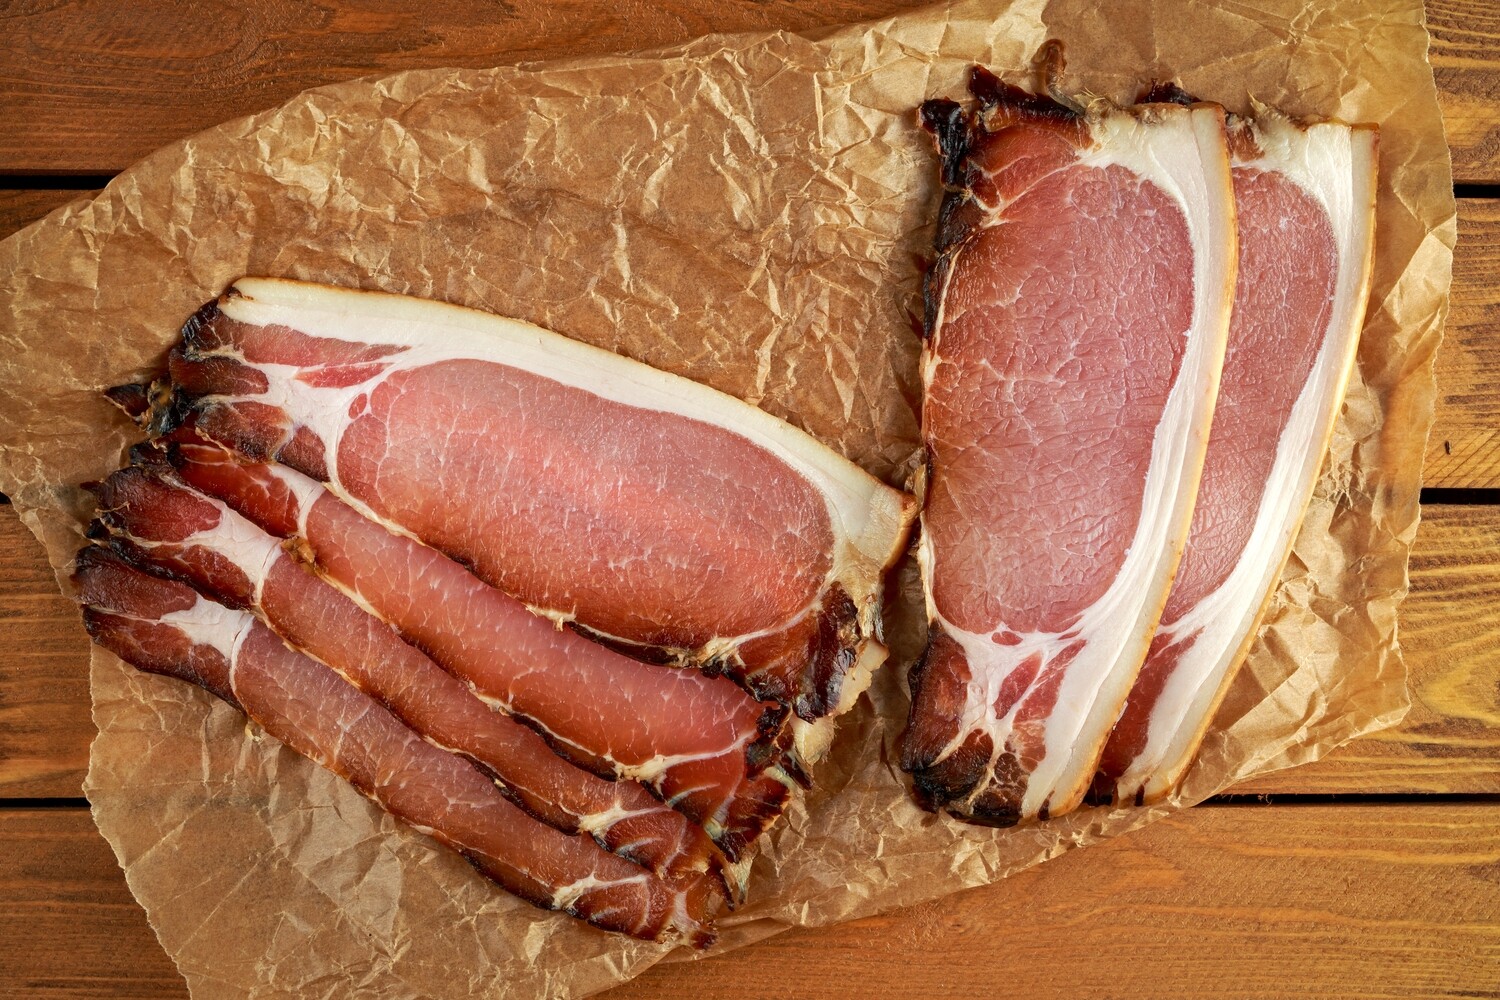 Smoked Back Bacon - FROZEN - AV. 7.50€ per 300gm 8 slice pack          
(21.50€ per KG)